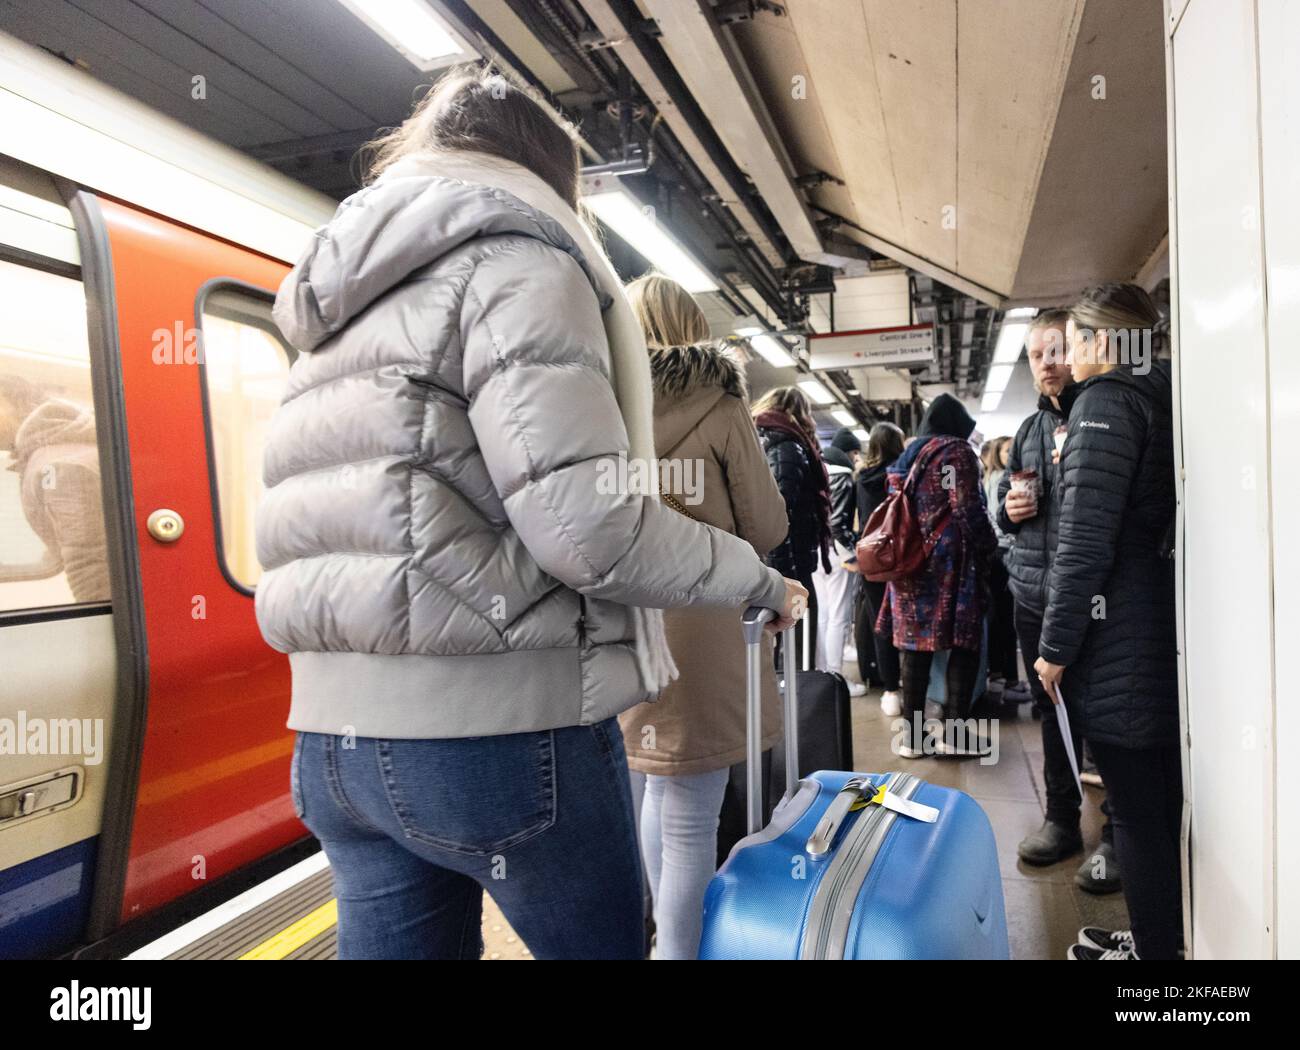 Piattaforma affollata sulla metropolitana di Londra; folla di passeggeri con valigie sulla piattaforma, stazione della metropolitana di Liverpool Street, Londra UK Foto Stock